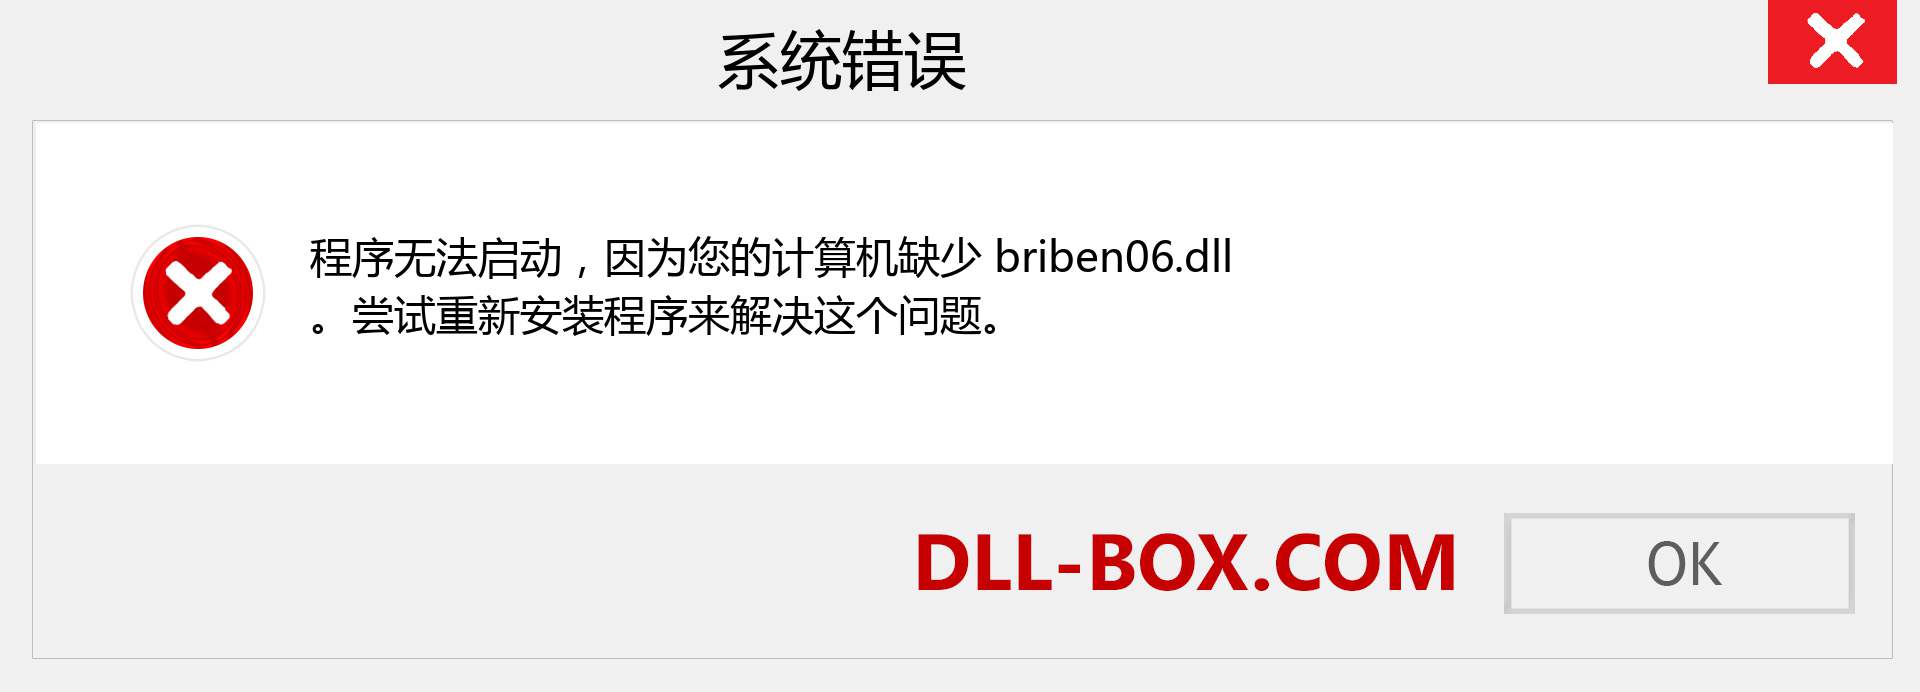 briben06.dll 文件丢失？。 适用于 Windows 7、8、10 的下载 - 修复 Windows、照片、图像上的 briben06 dll 丢失错误